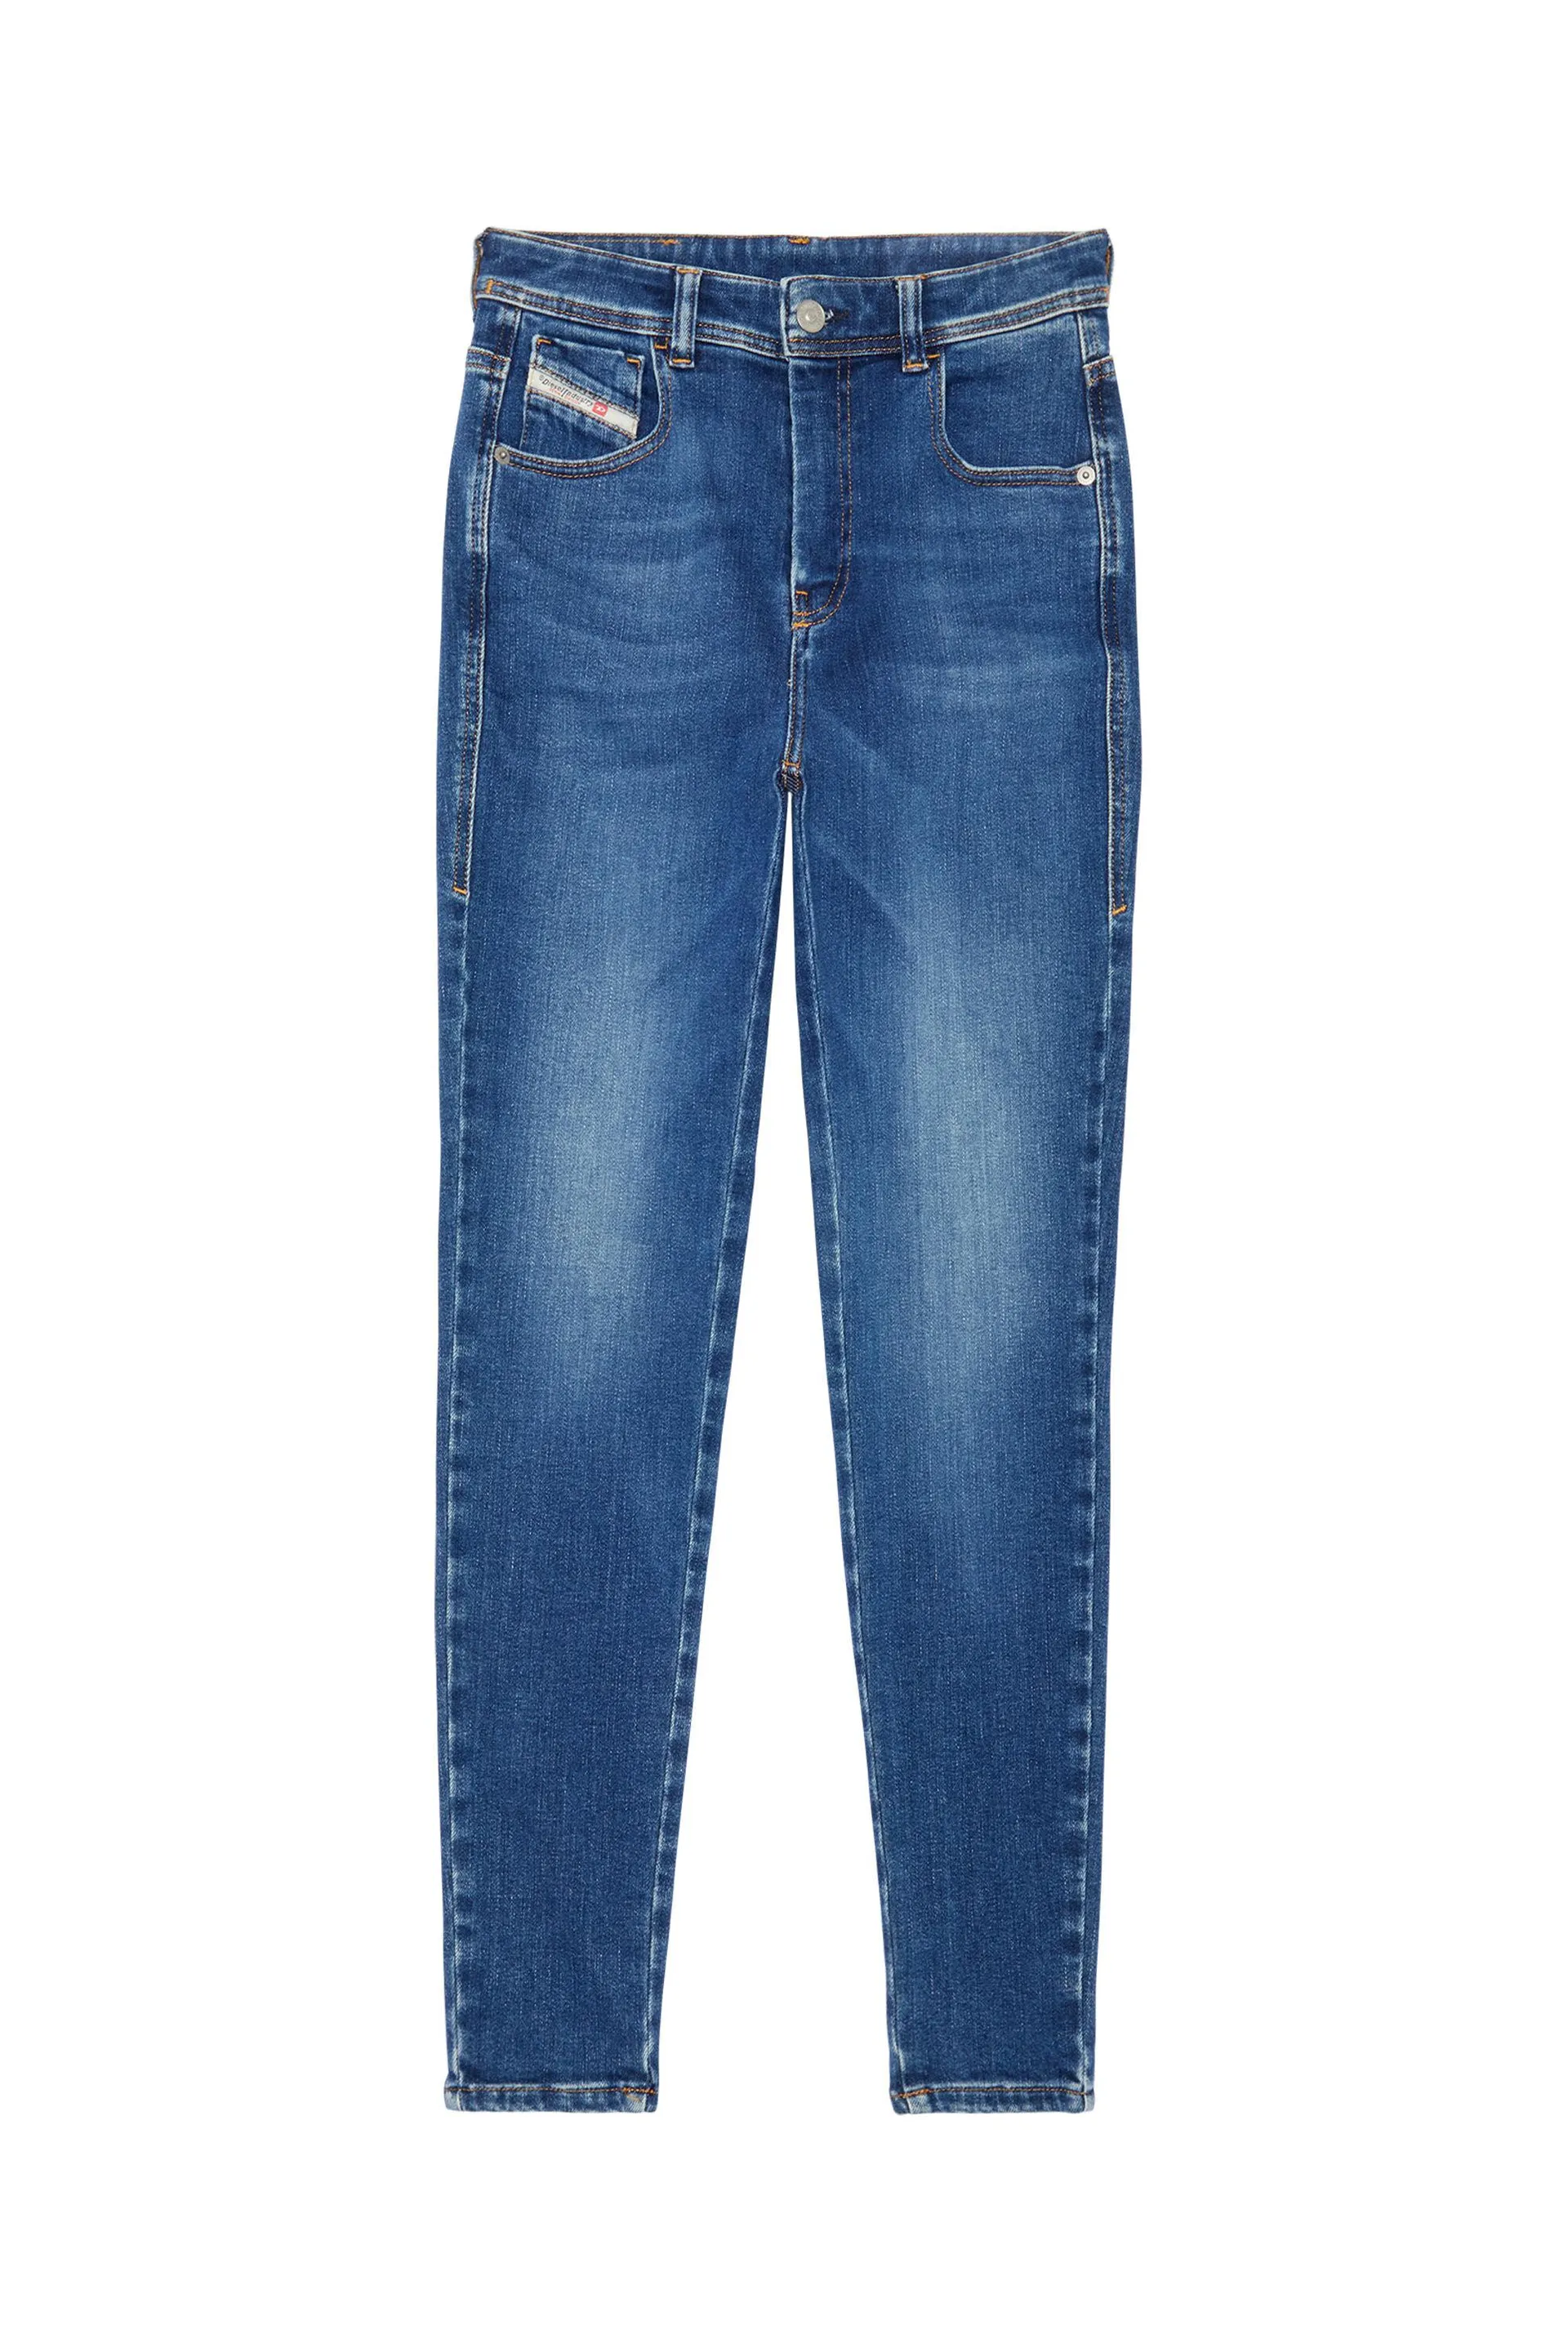 super skinny jeans 1984 slandy-high 09c21